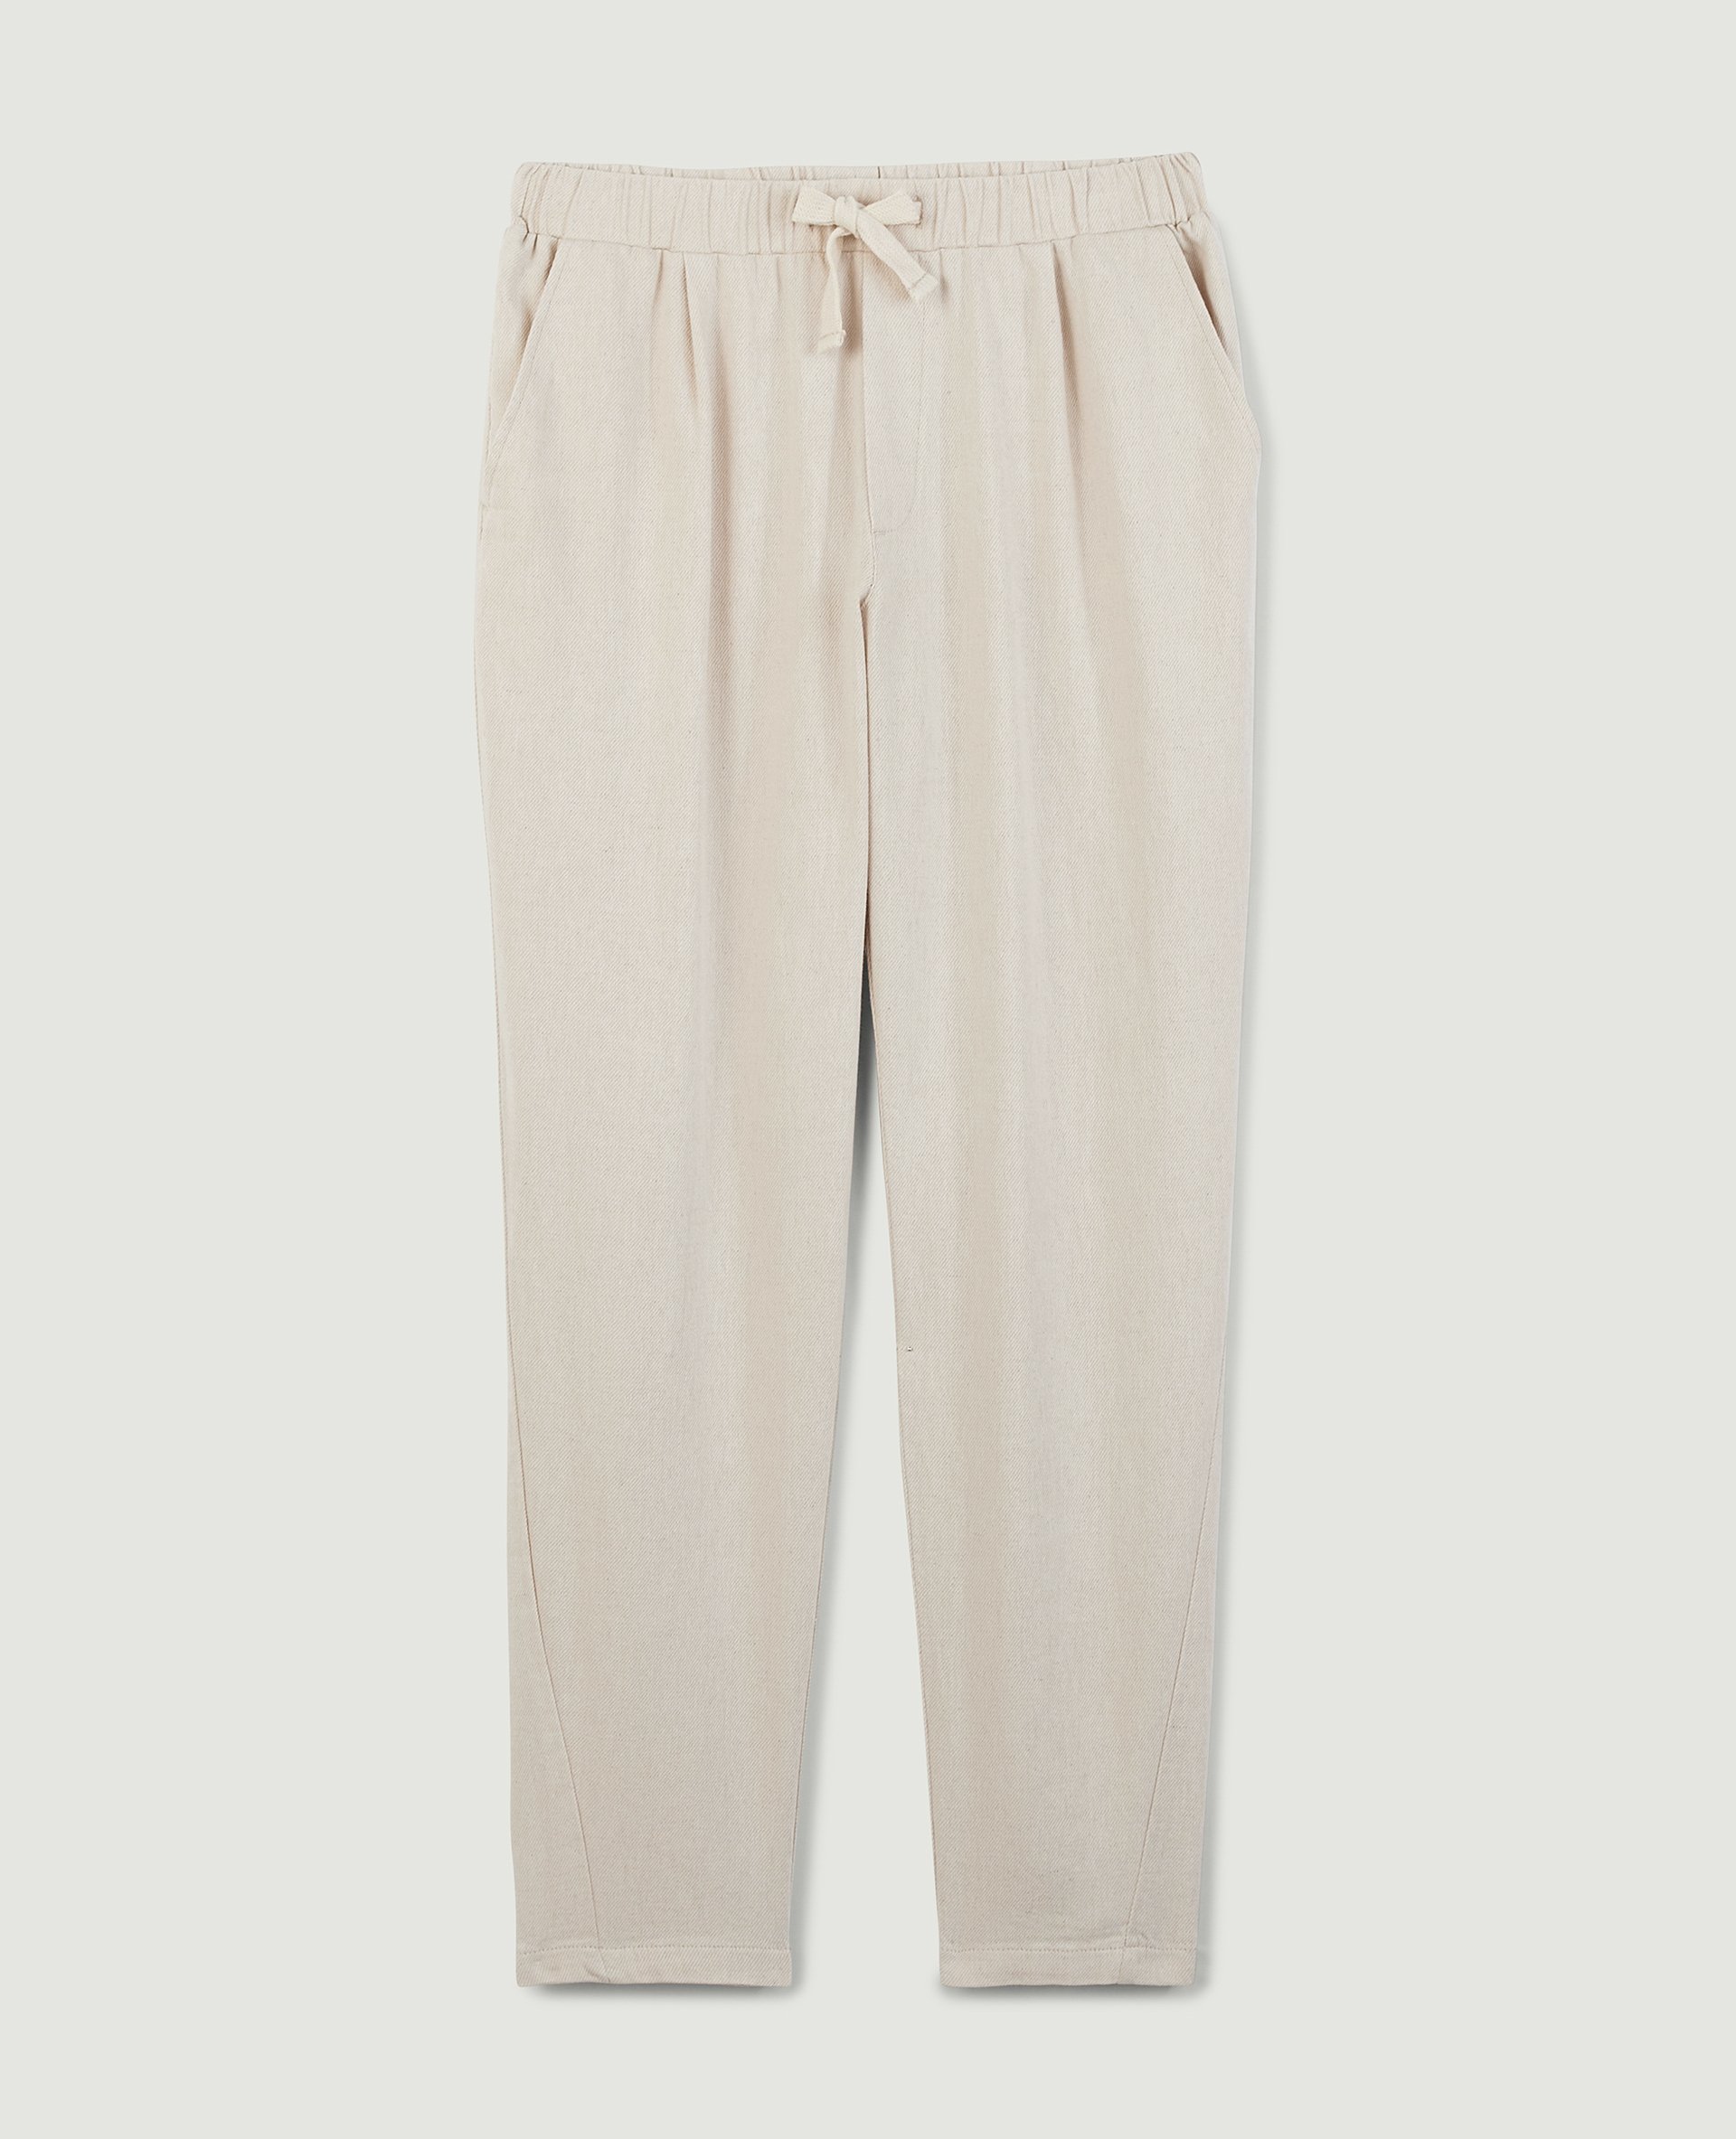 Pantalon taille élastiquée beige ficelle - Pimkie